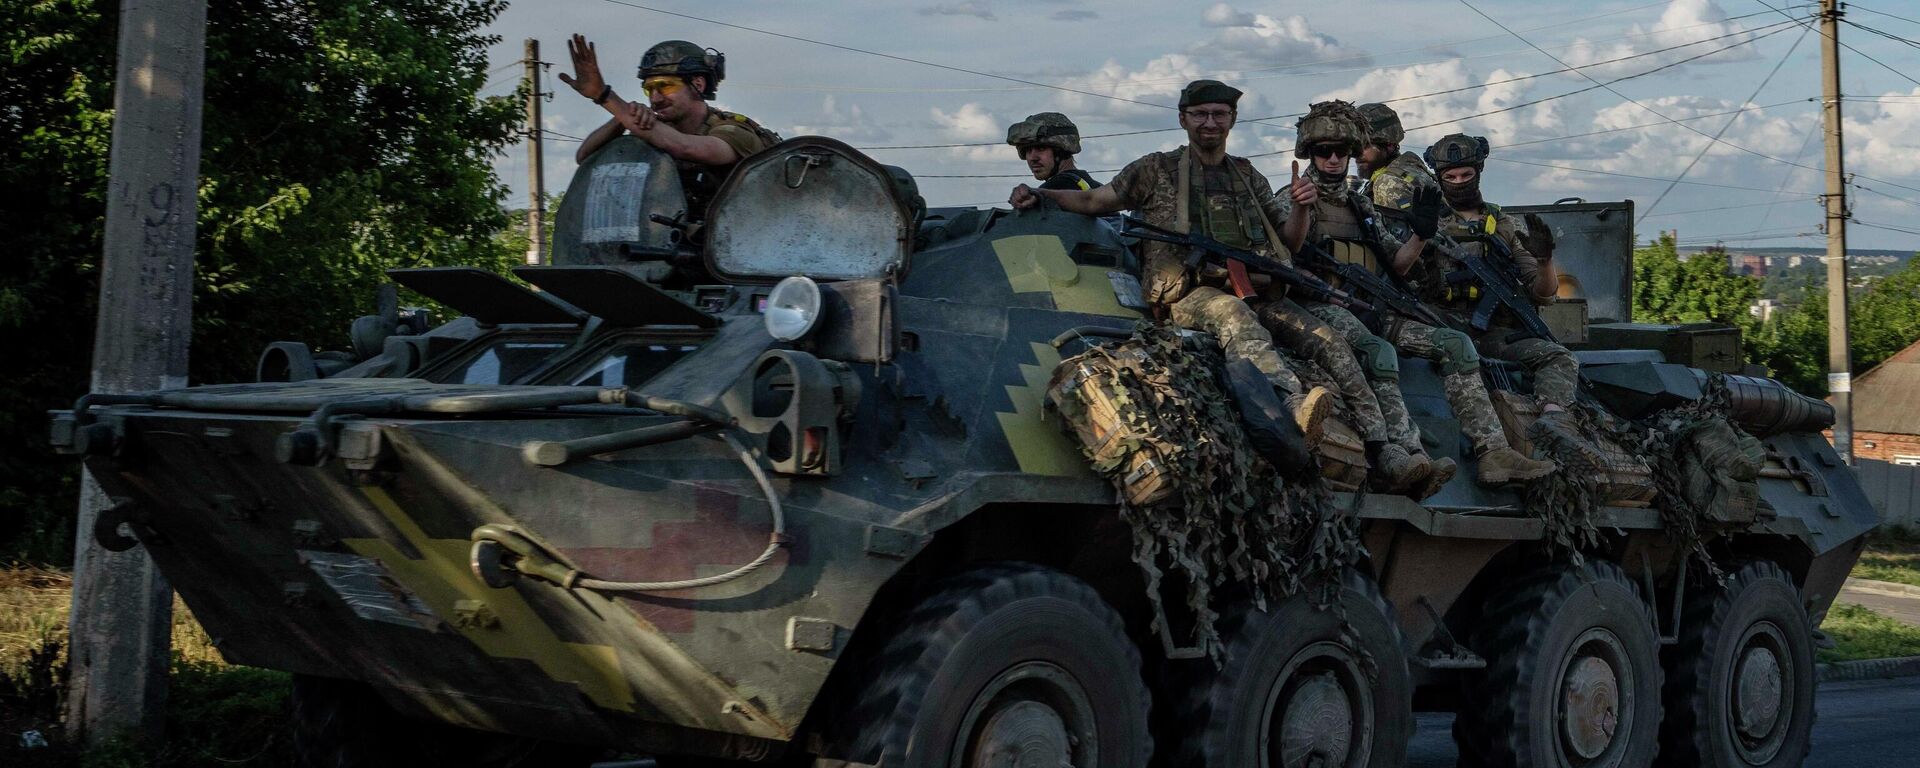 Soldados ucranianos montam um tanque, em uma estrada na região de Donetsk, leste da Ucrânia, 20 de julho de 2022 - Sputnik Brasil, 1920, 14.12.2022